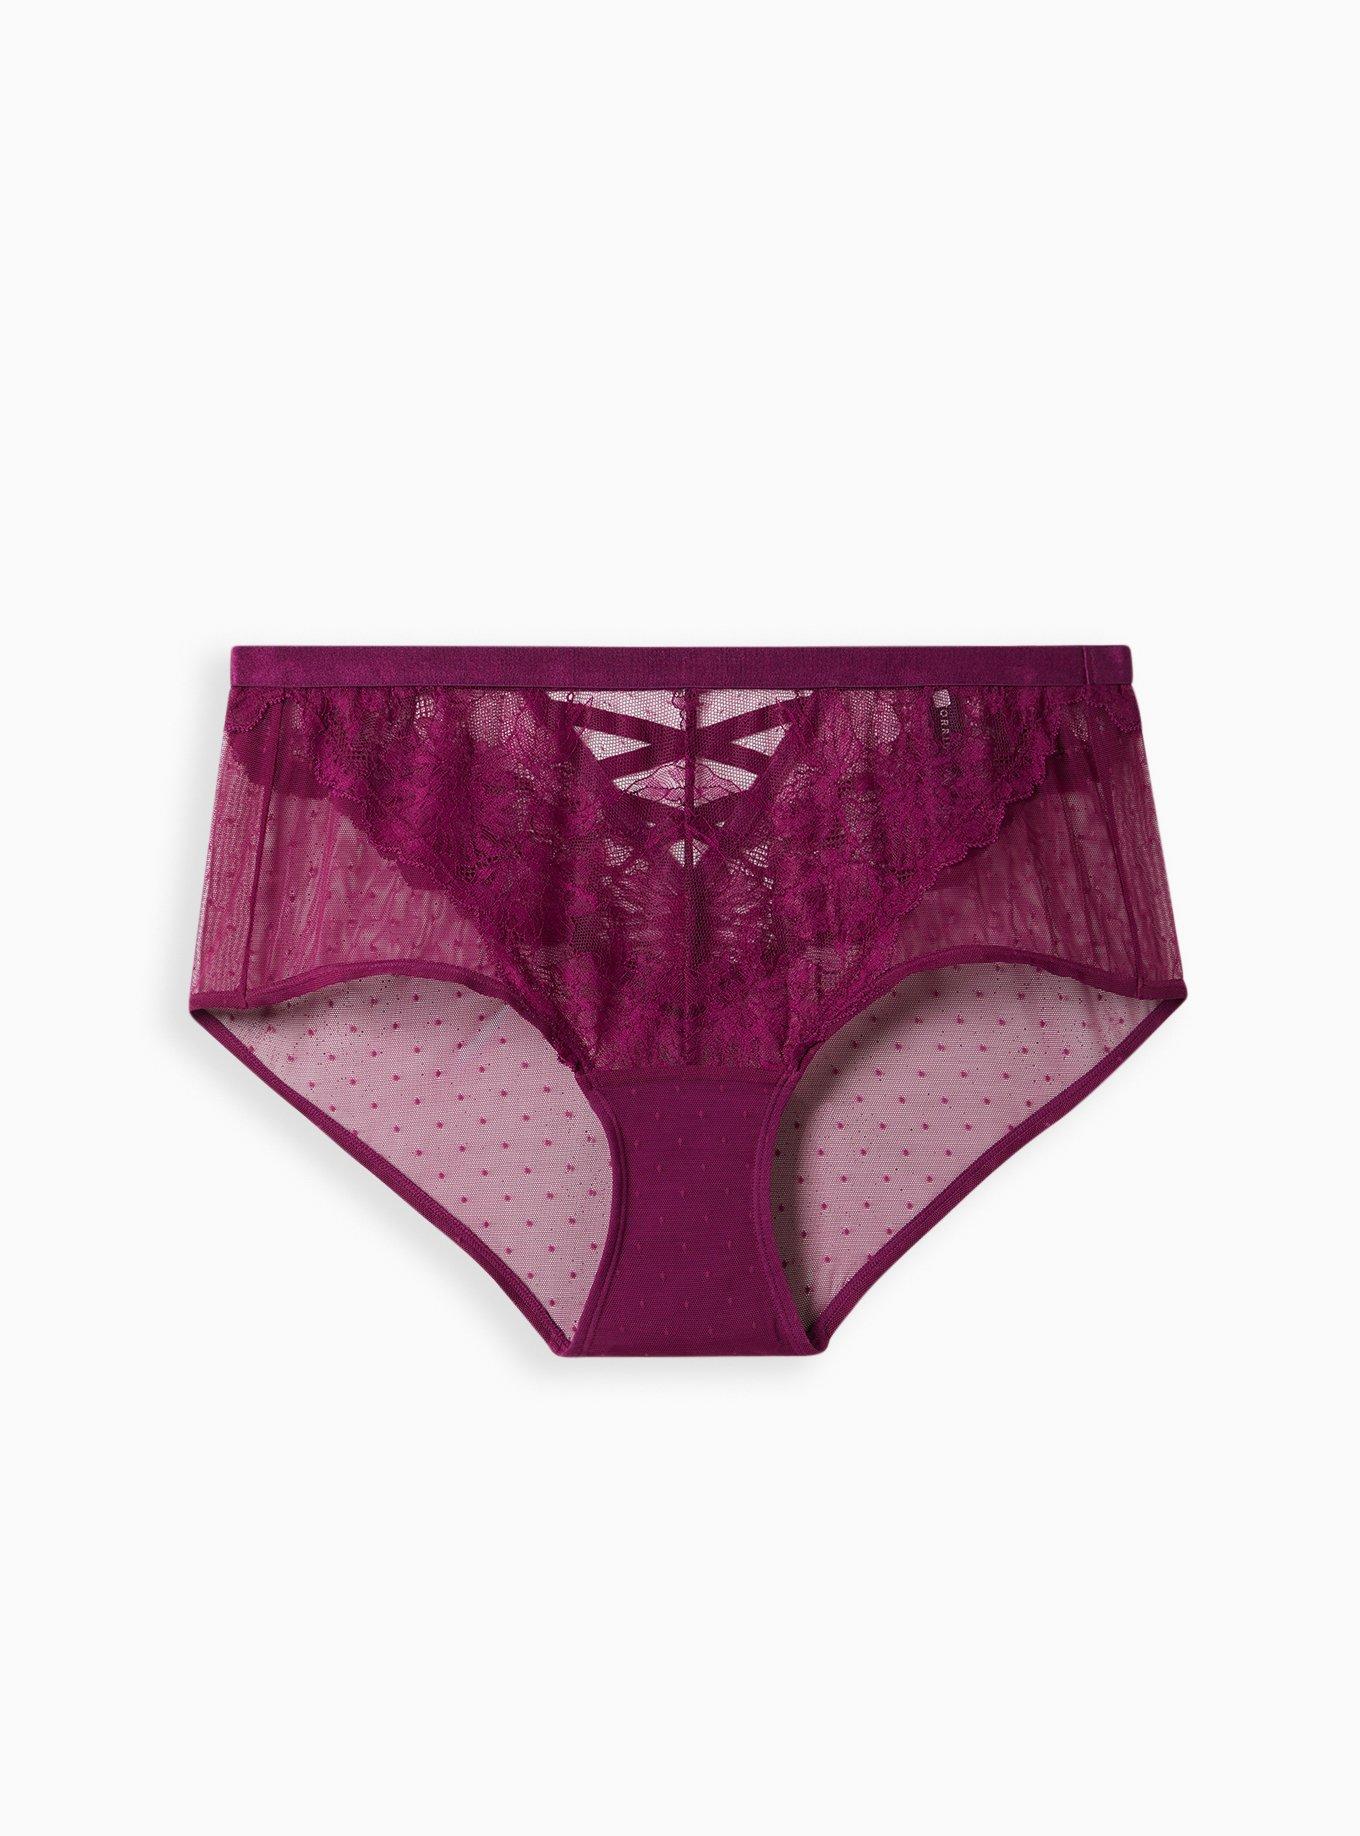 Plus Size - XO Cheeky Panty - Dot Lace Purple - Torrid